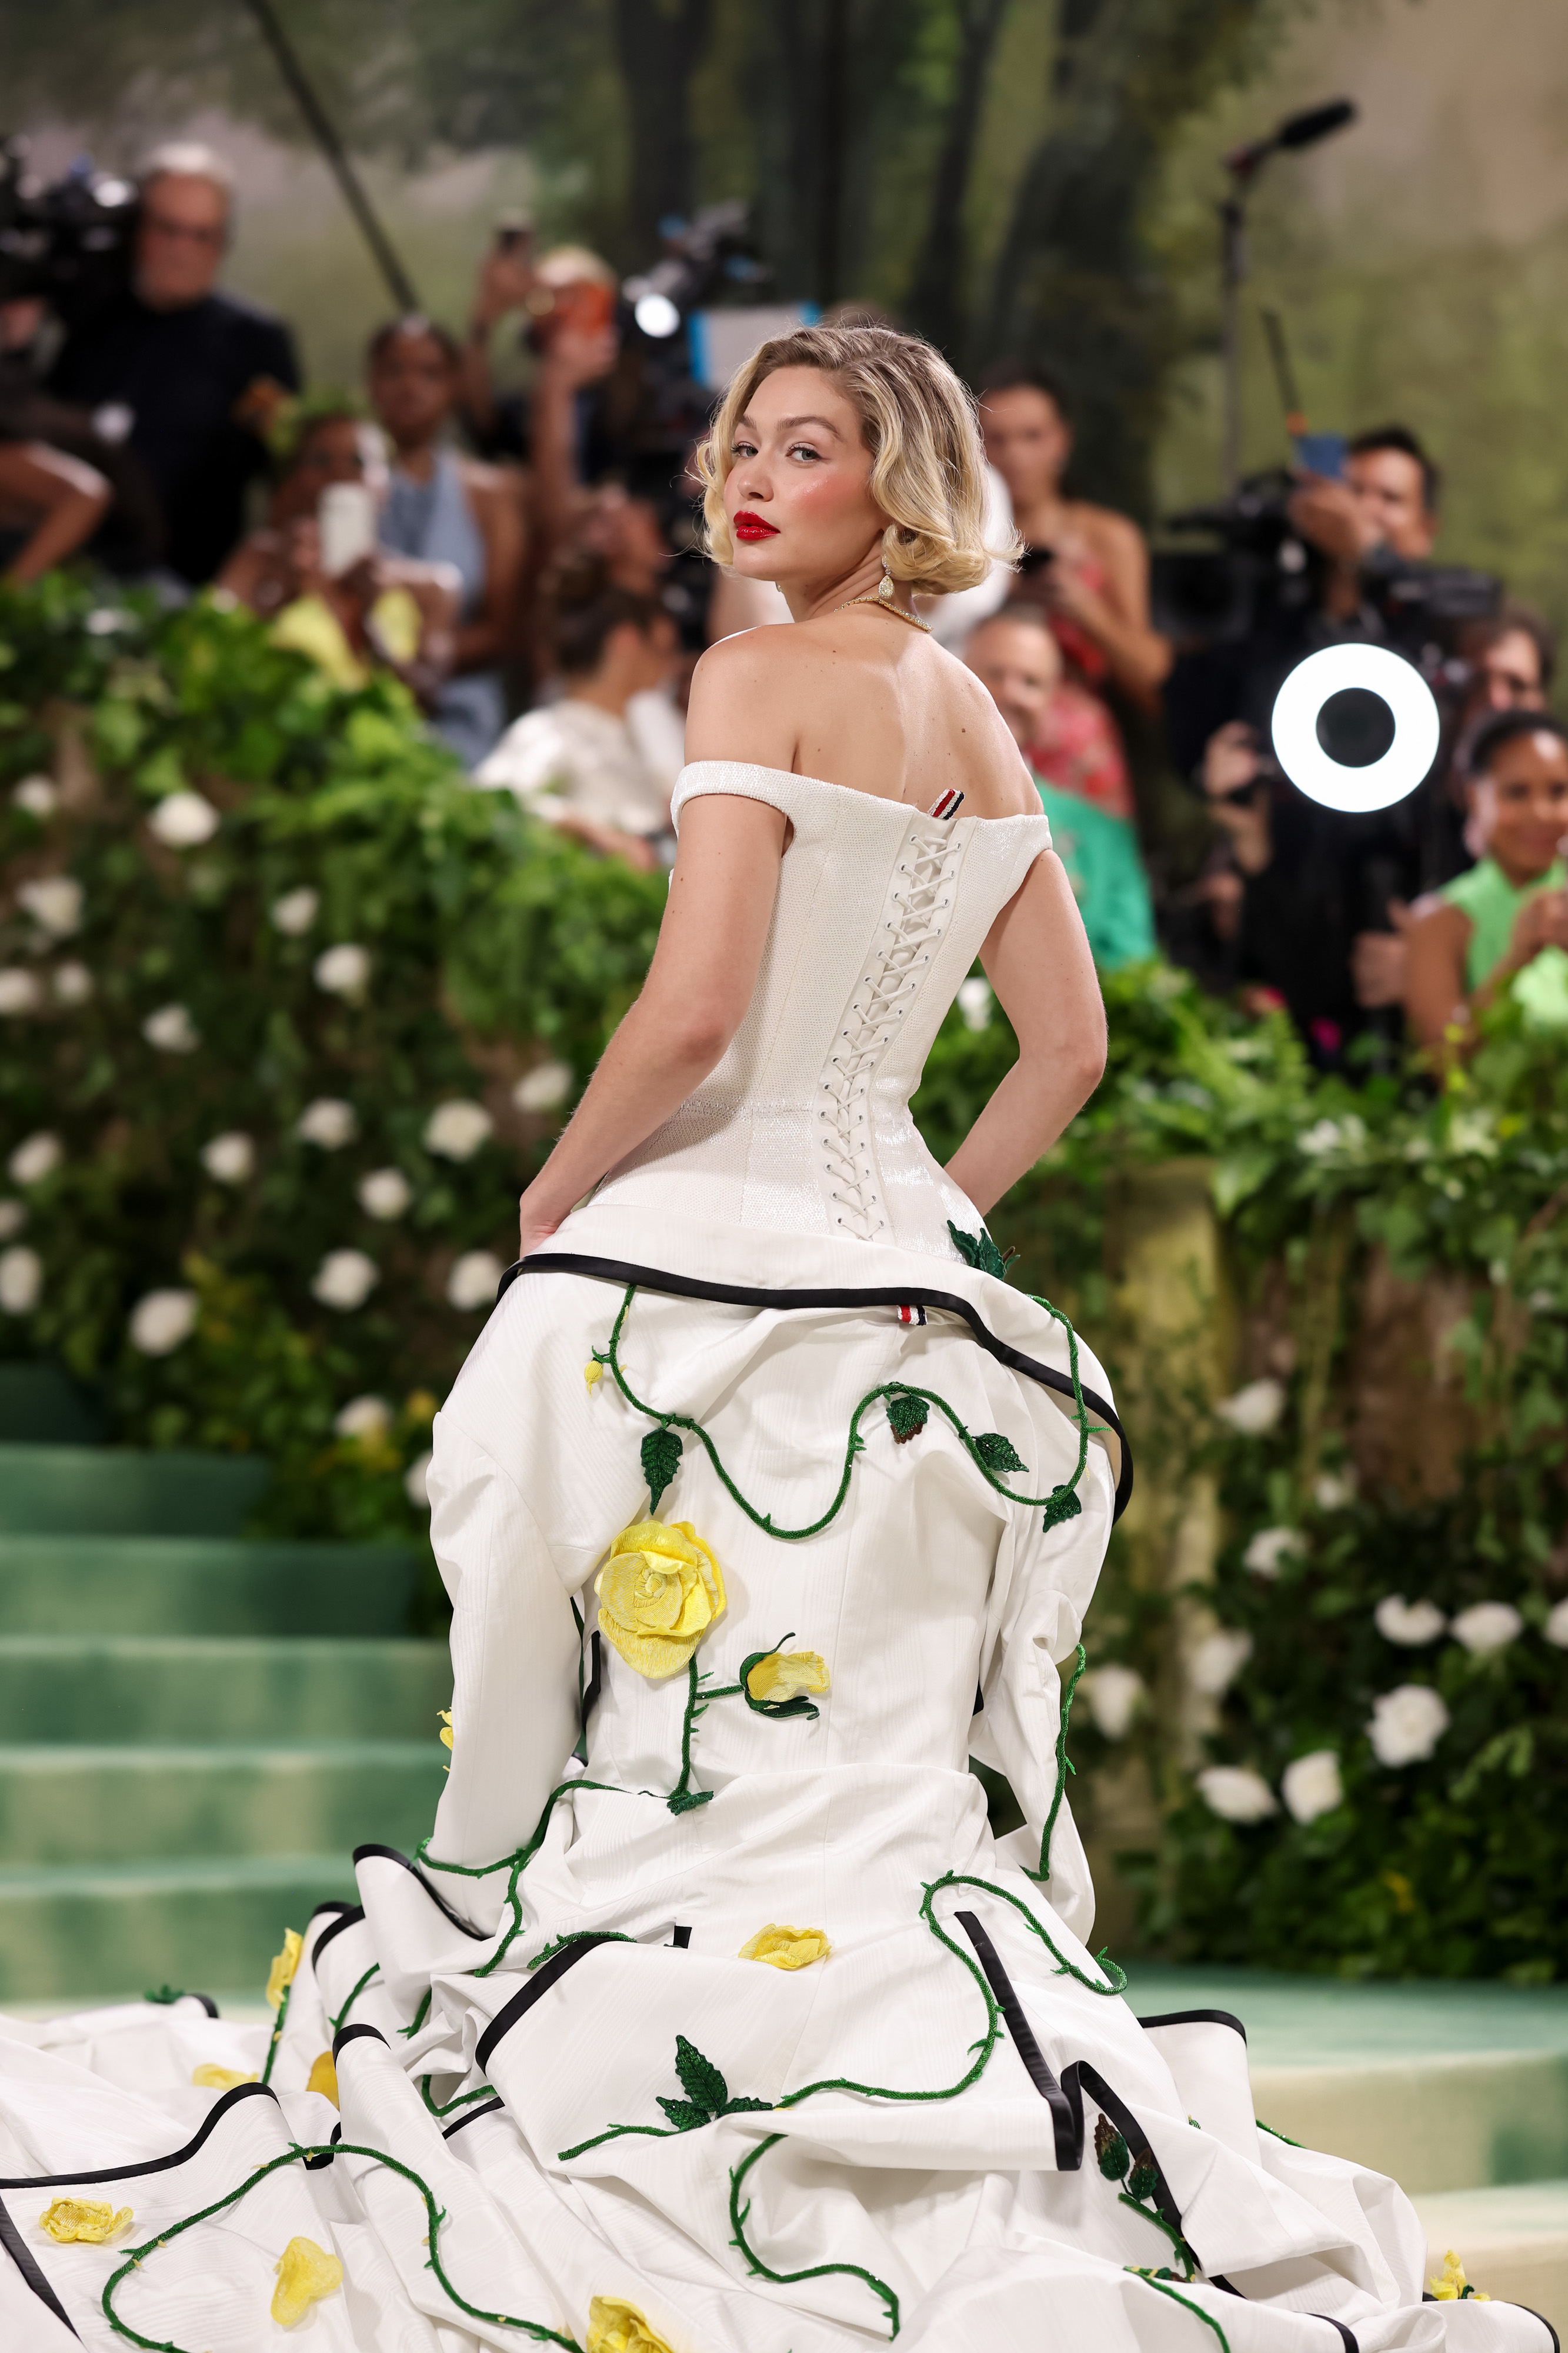 Celebridad en vestido blanco estilo corsé con detalles de rosas, posando en alfombra de evento